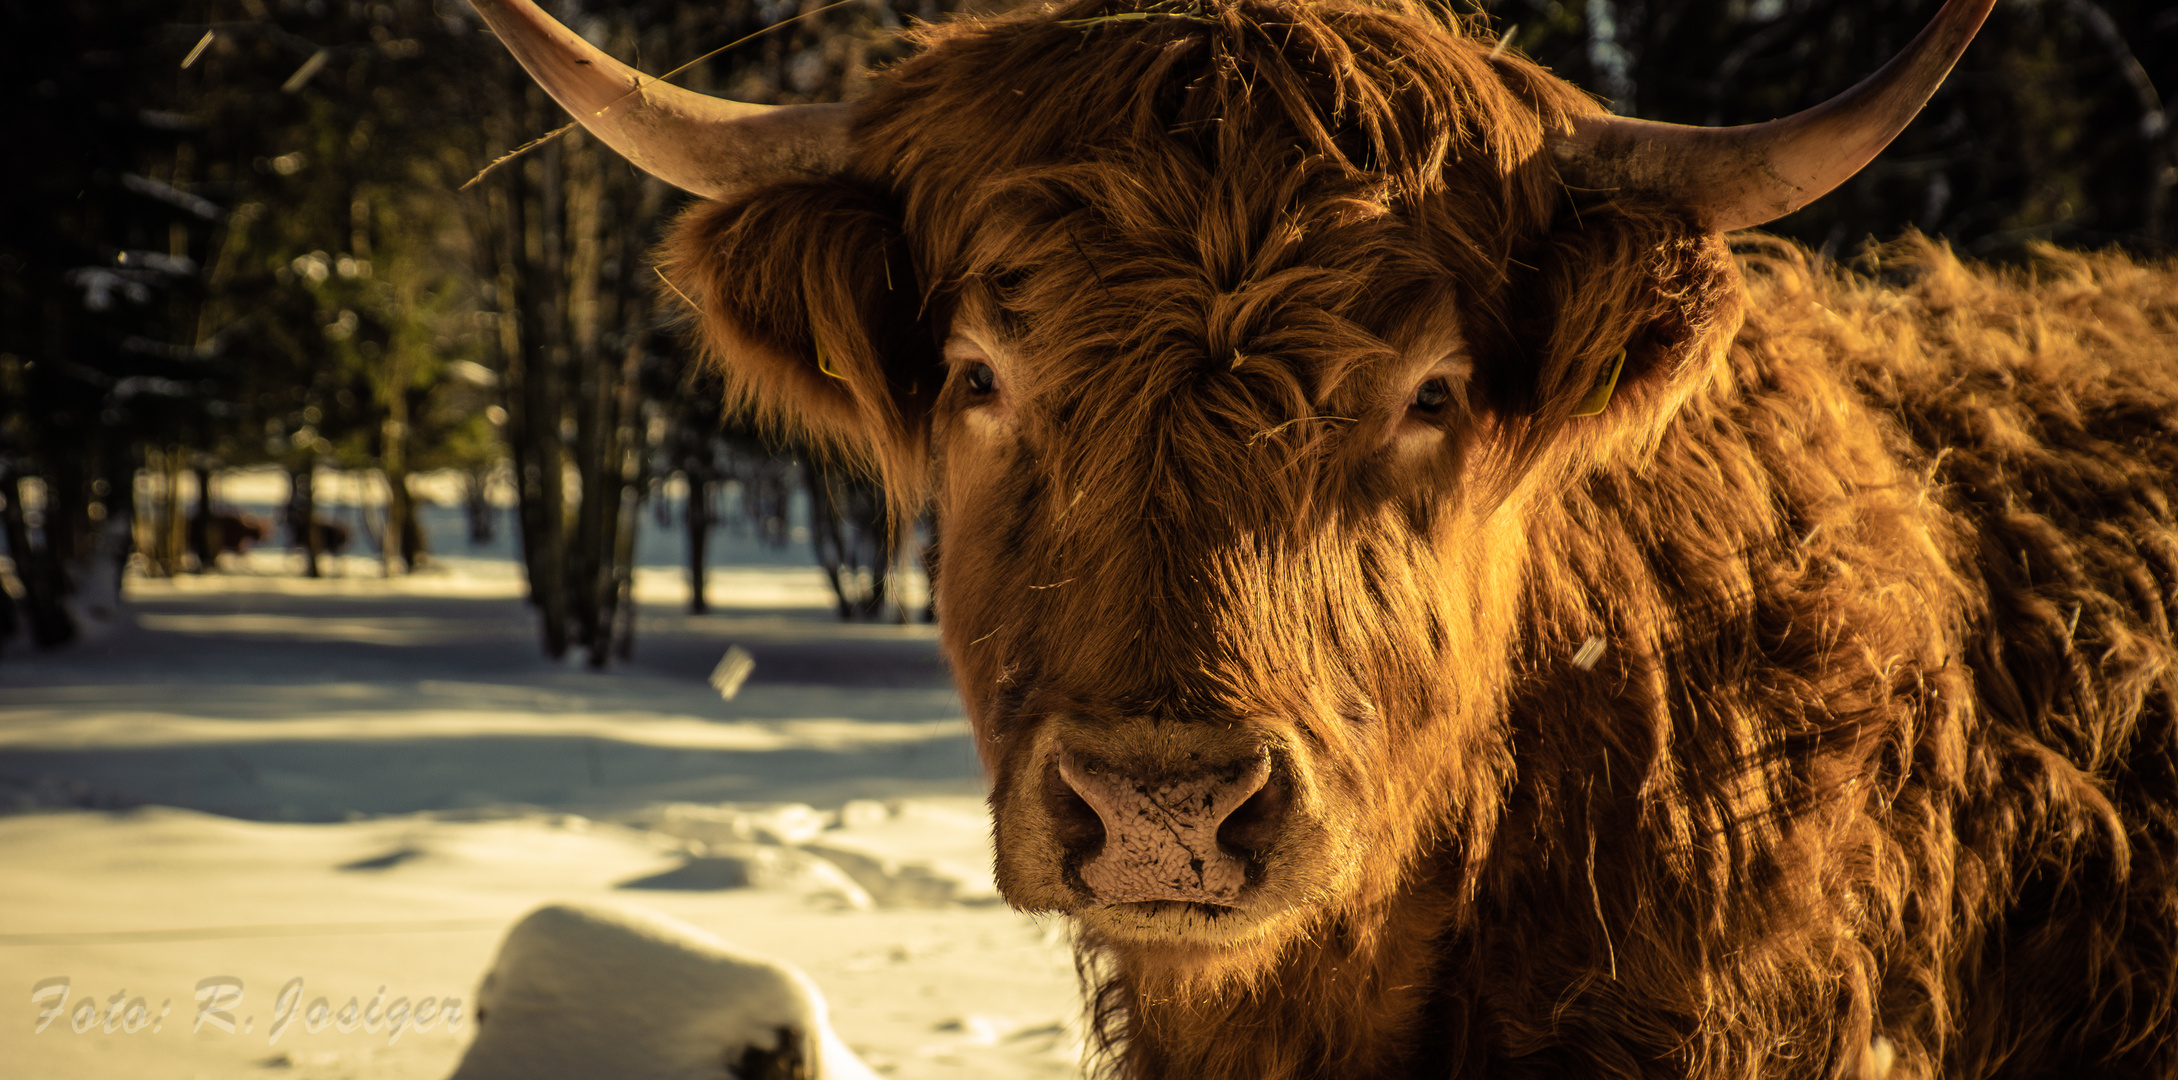 Highland Cattle - Ikone des schottischen Hochlands